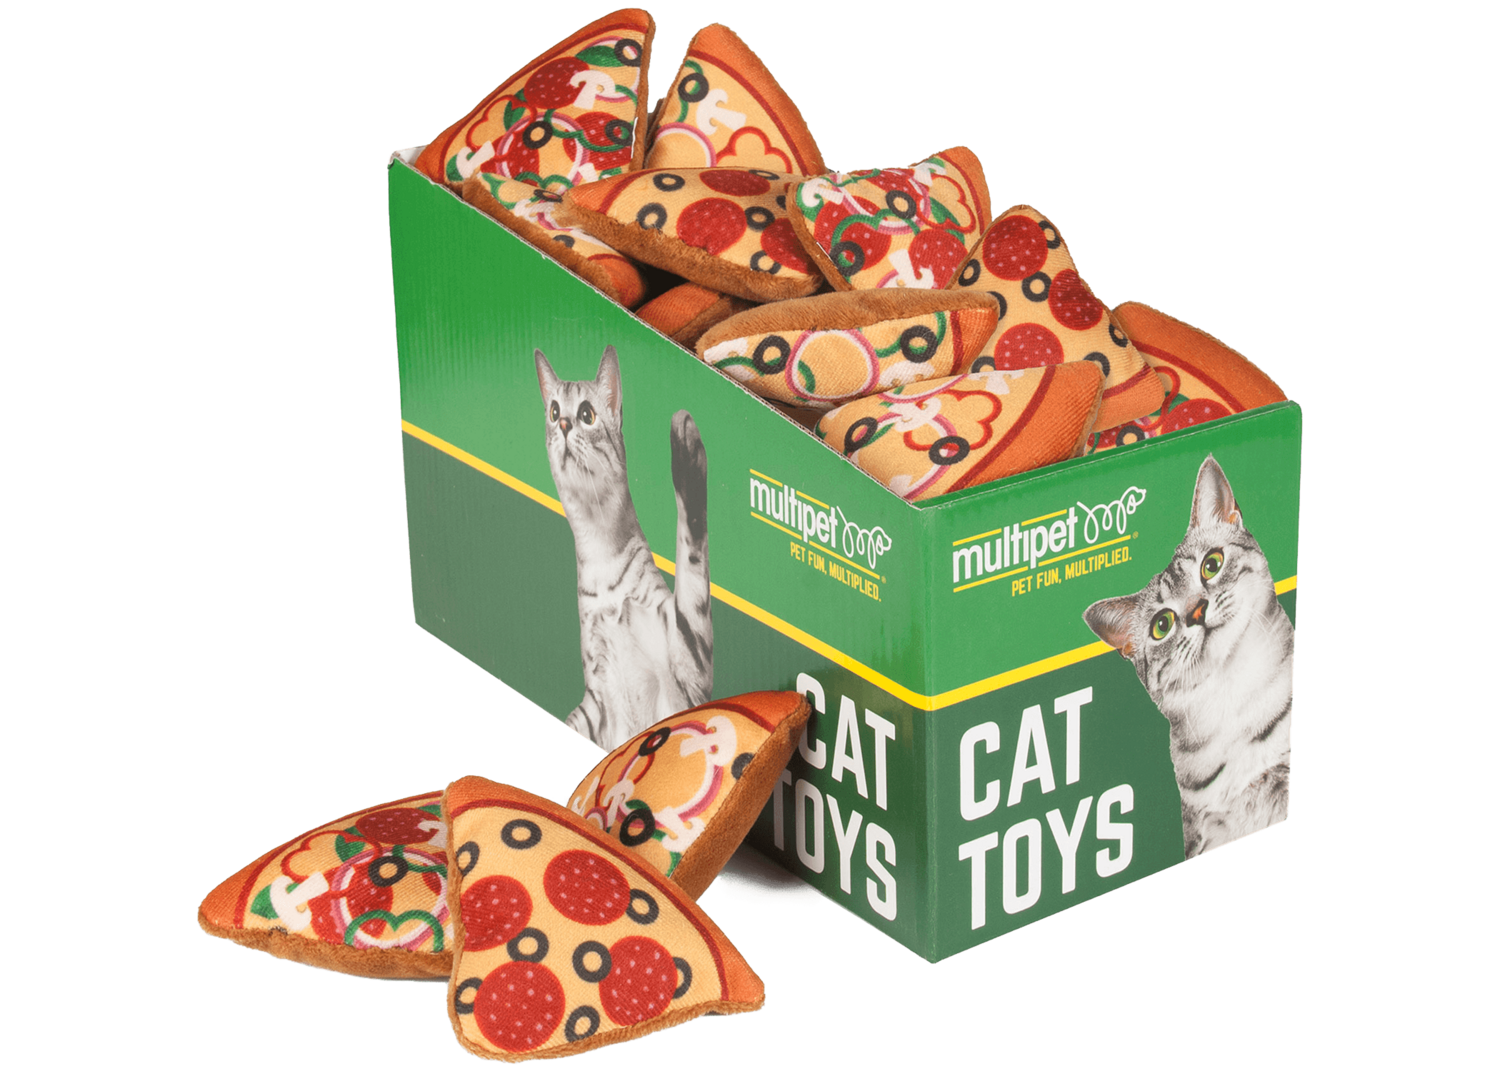 MULTIPET – Jouet pizza enrichie d’herbe à chat pour les chats